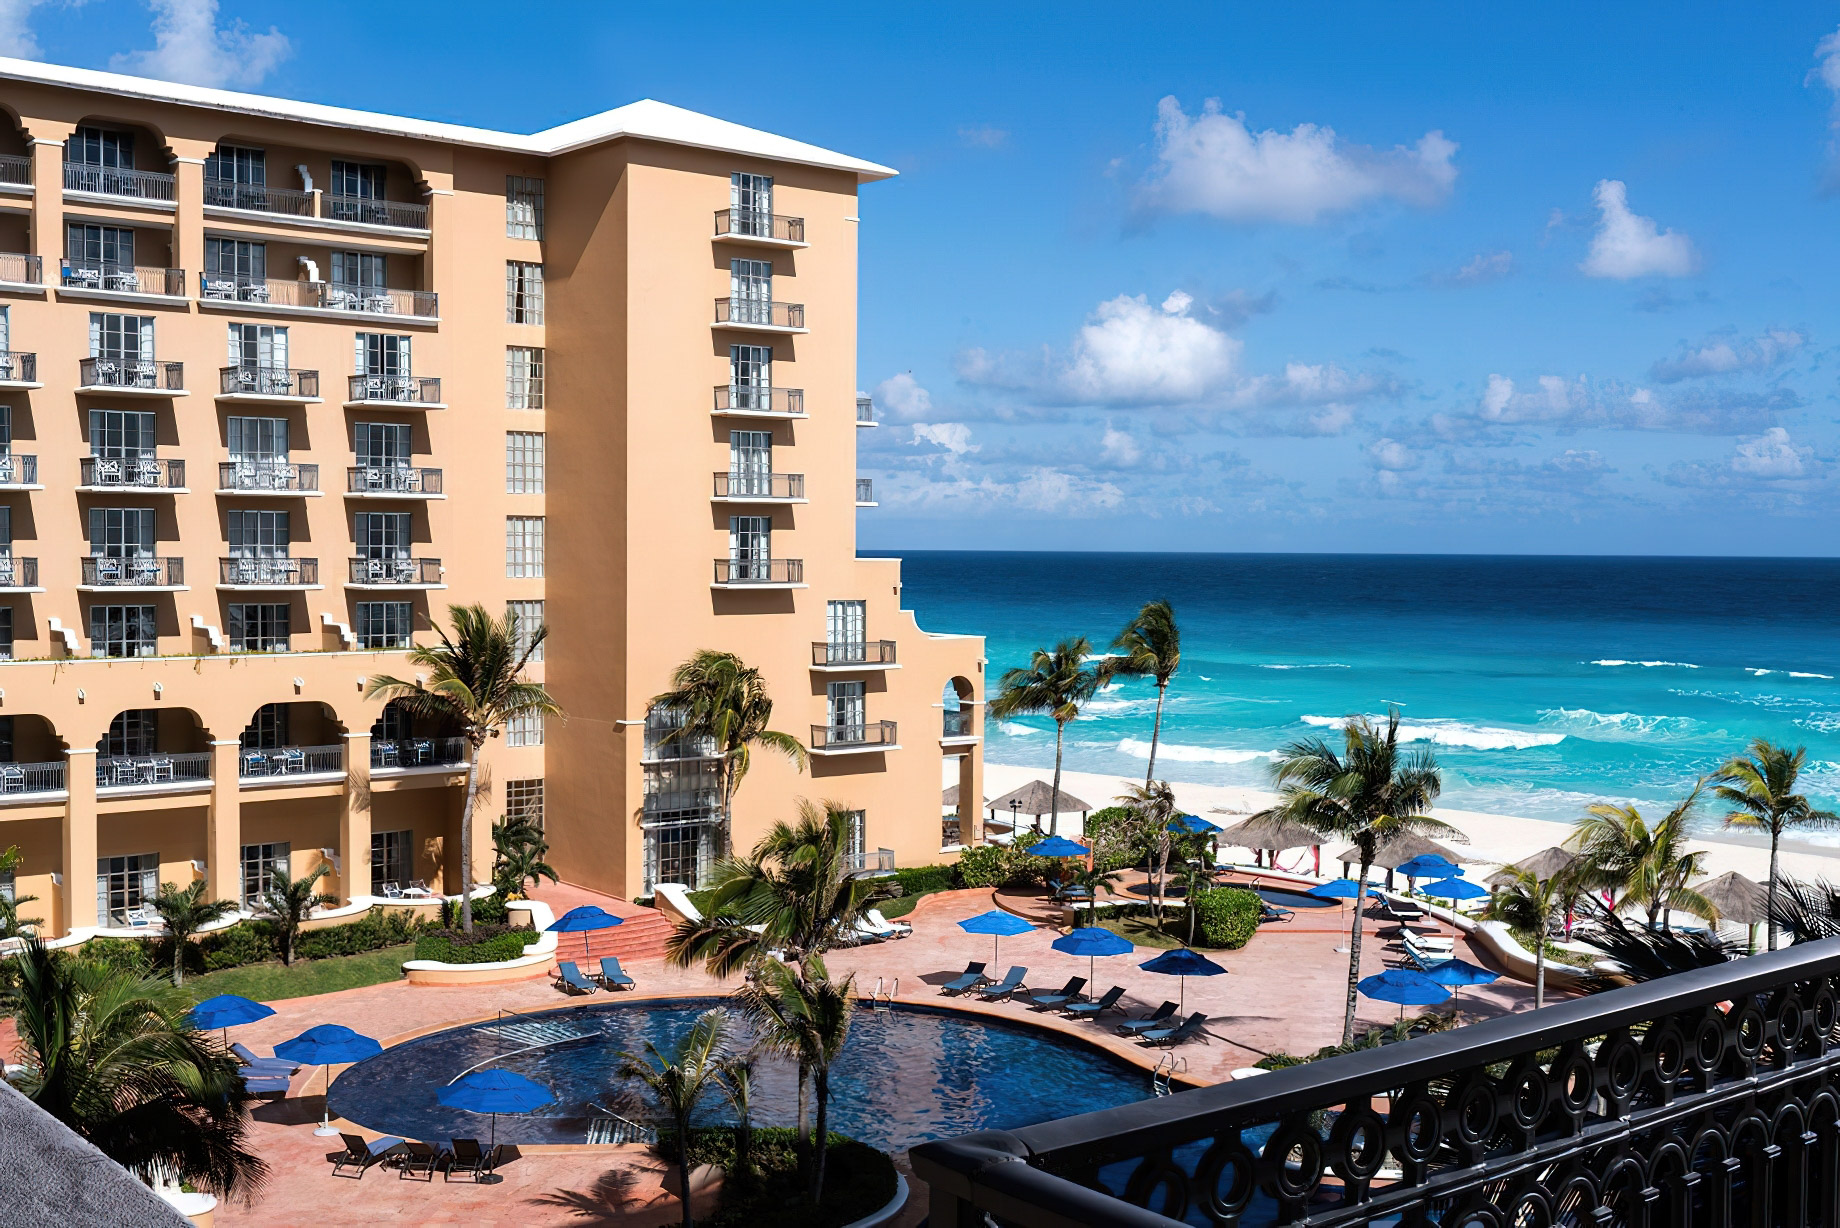 The Ritz-Carlton, Cancun Resort – Cancun, Mexico – Ocean View Room View